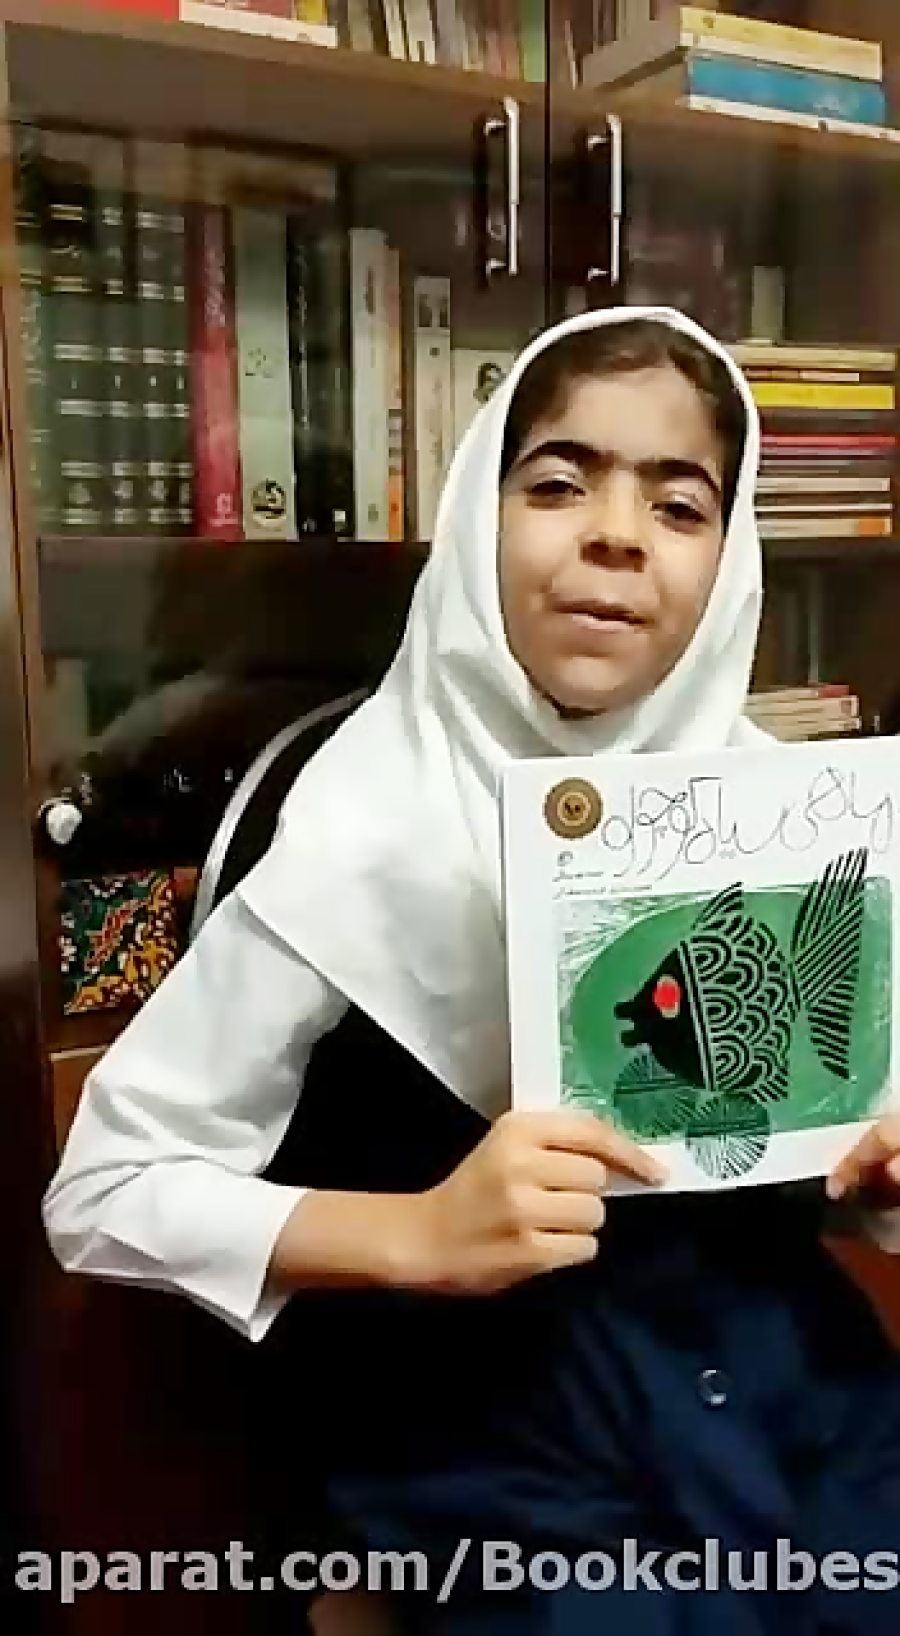 معرفی کتاب ماهی سیاه کوچولو توسط ثنا پاشایی از باشگاه کتابخوانی طنین پویش فکر زمان37ثانیه